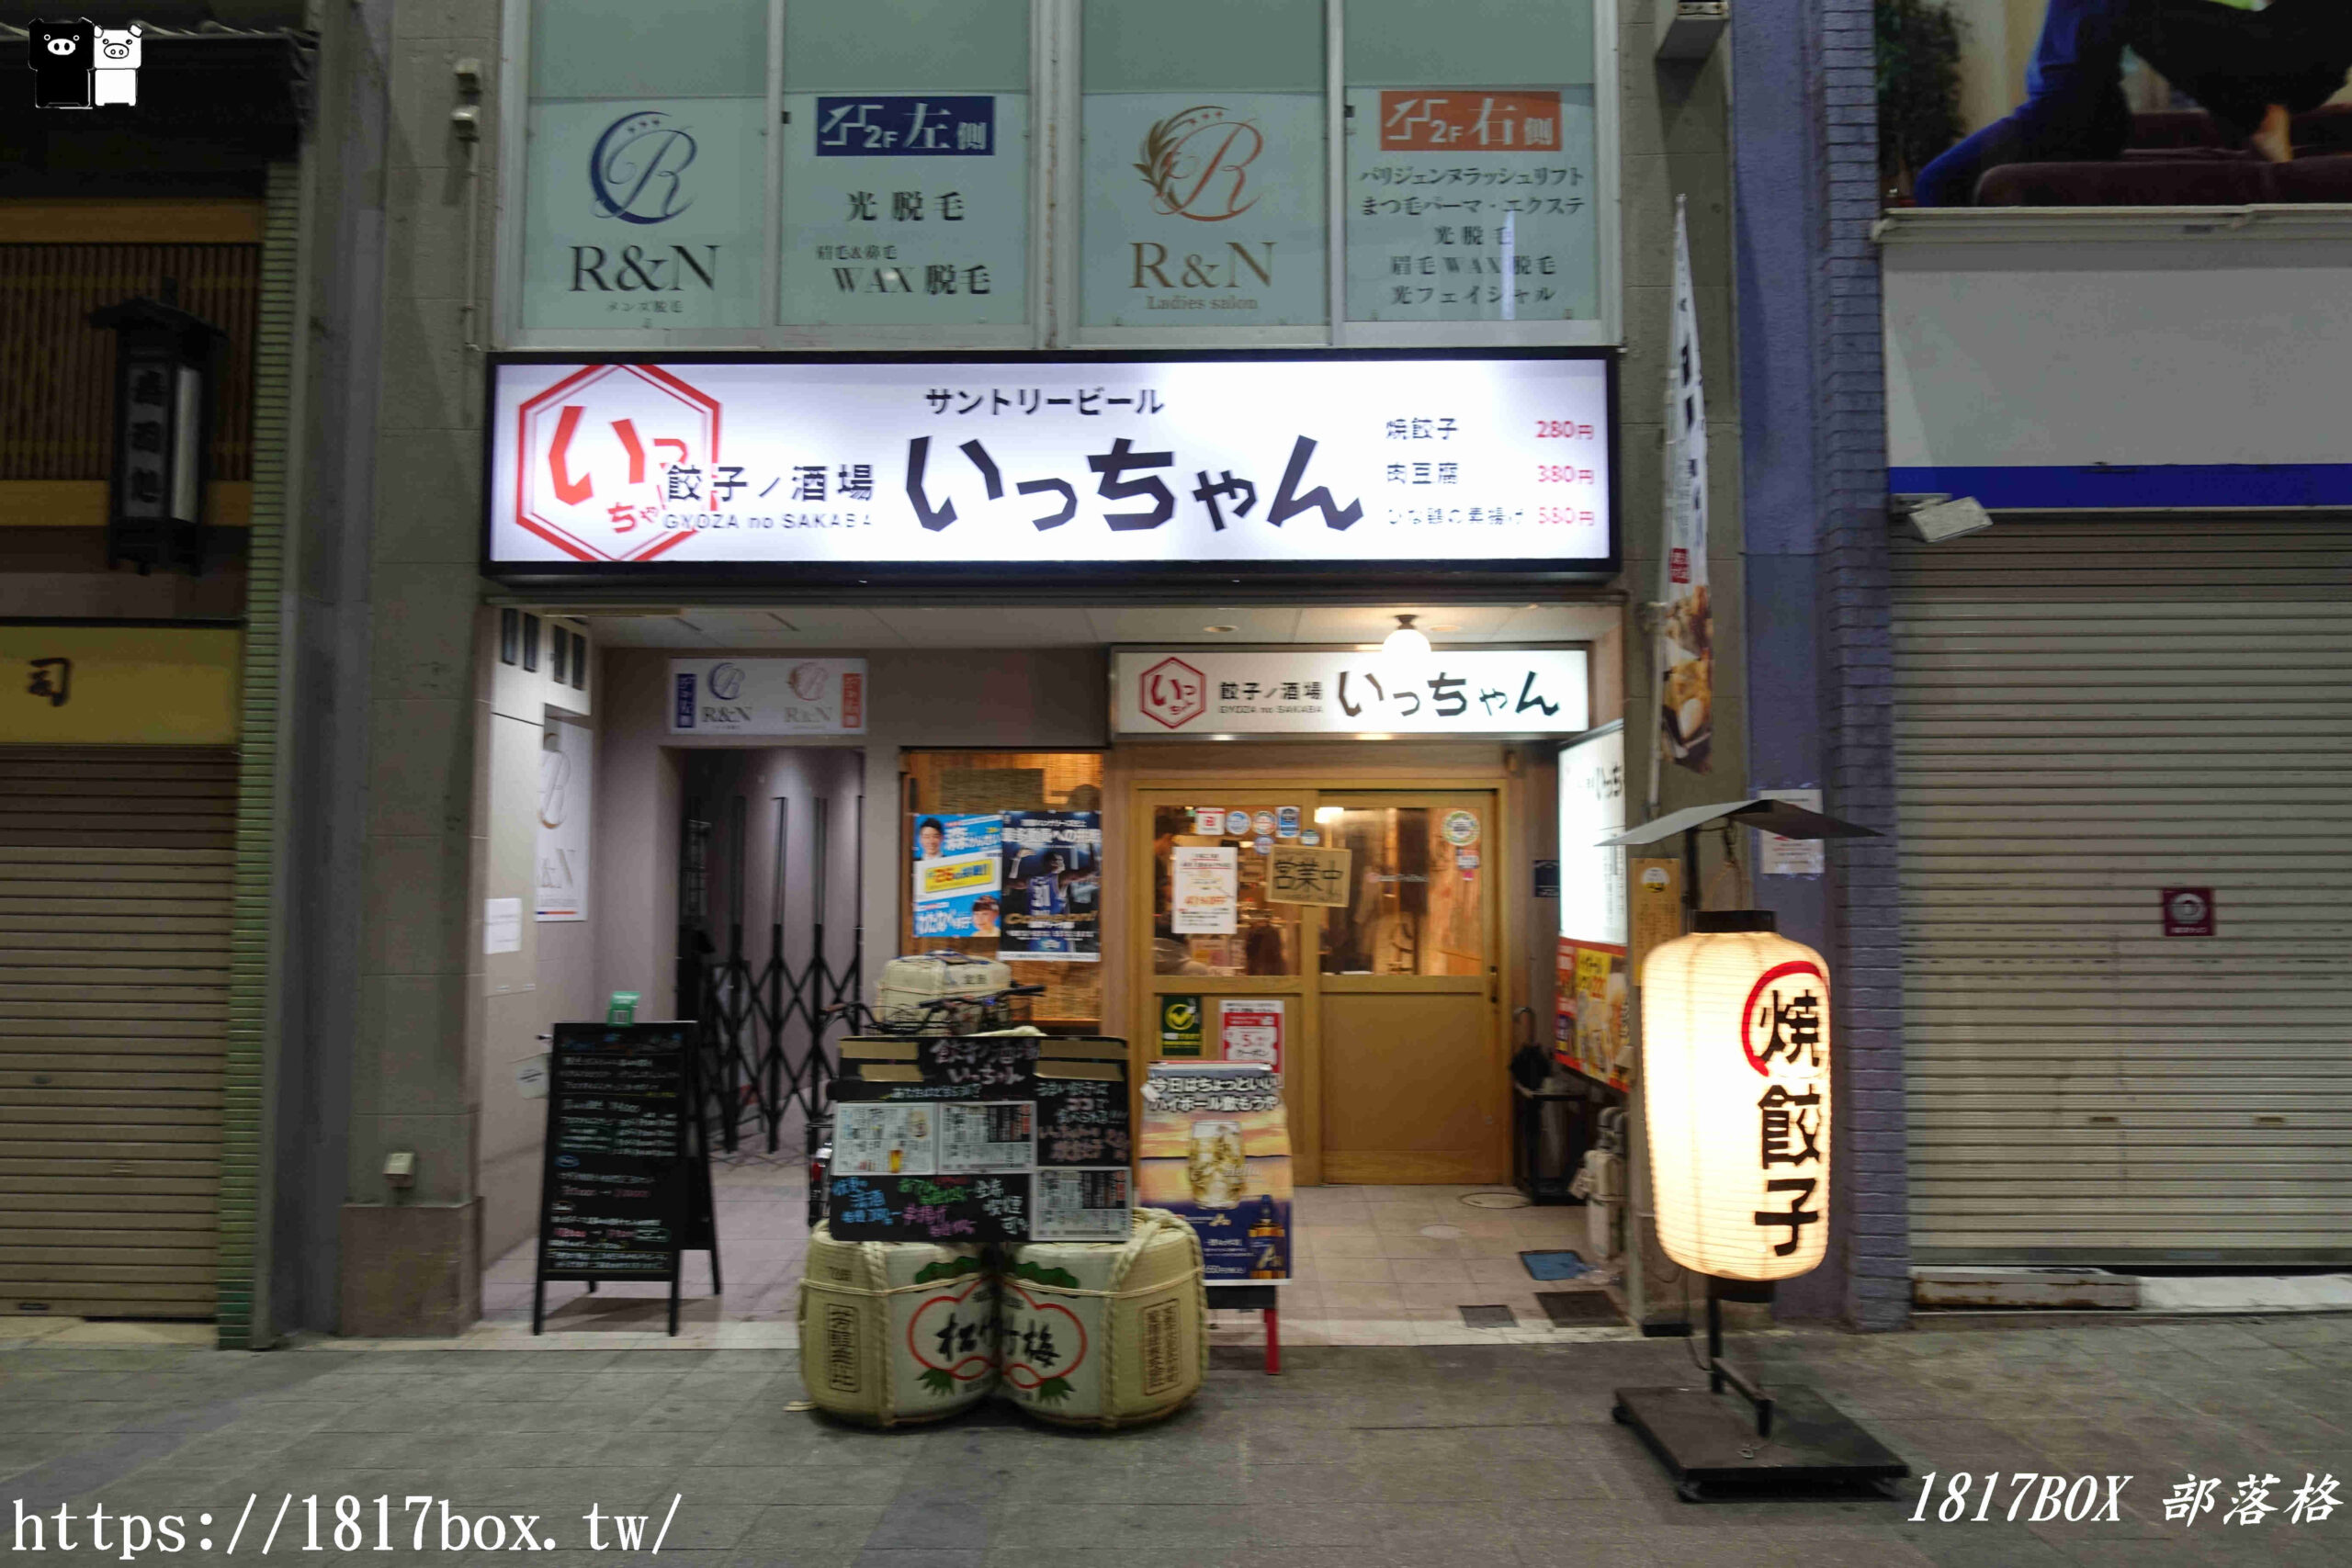 【京都景點】伏見大手筋商店街。歴史と水と酒の街。伏見地區最熱鬧的商店街之一